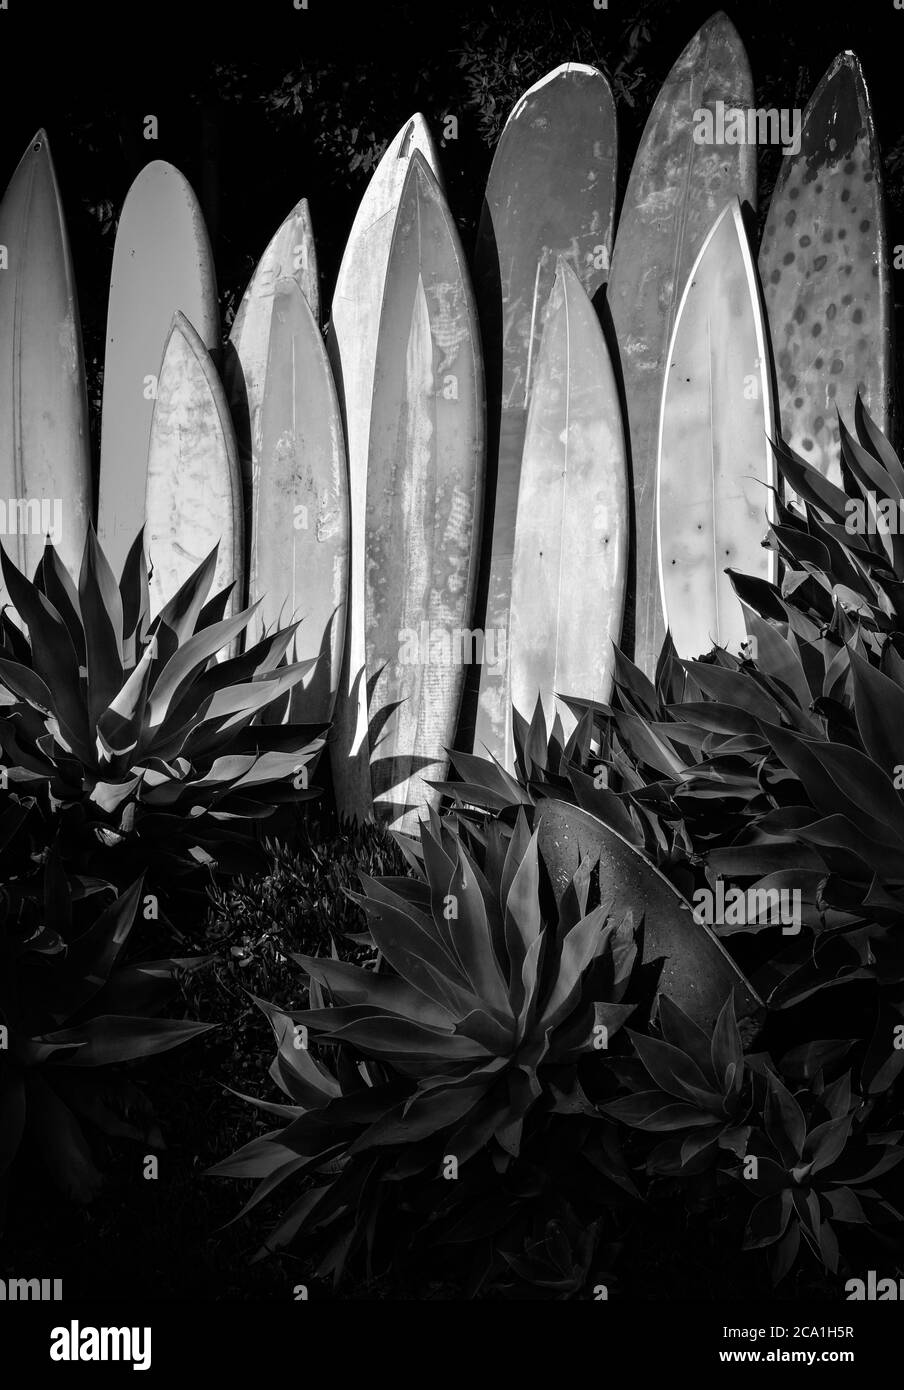 Ein vertikales Lline-up von pensionierten, grungy, vintage Surfboards in einem Agavengarten in Südkalifornien in Schwarz und Weiß Stockfoto